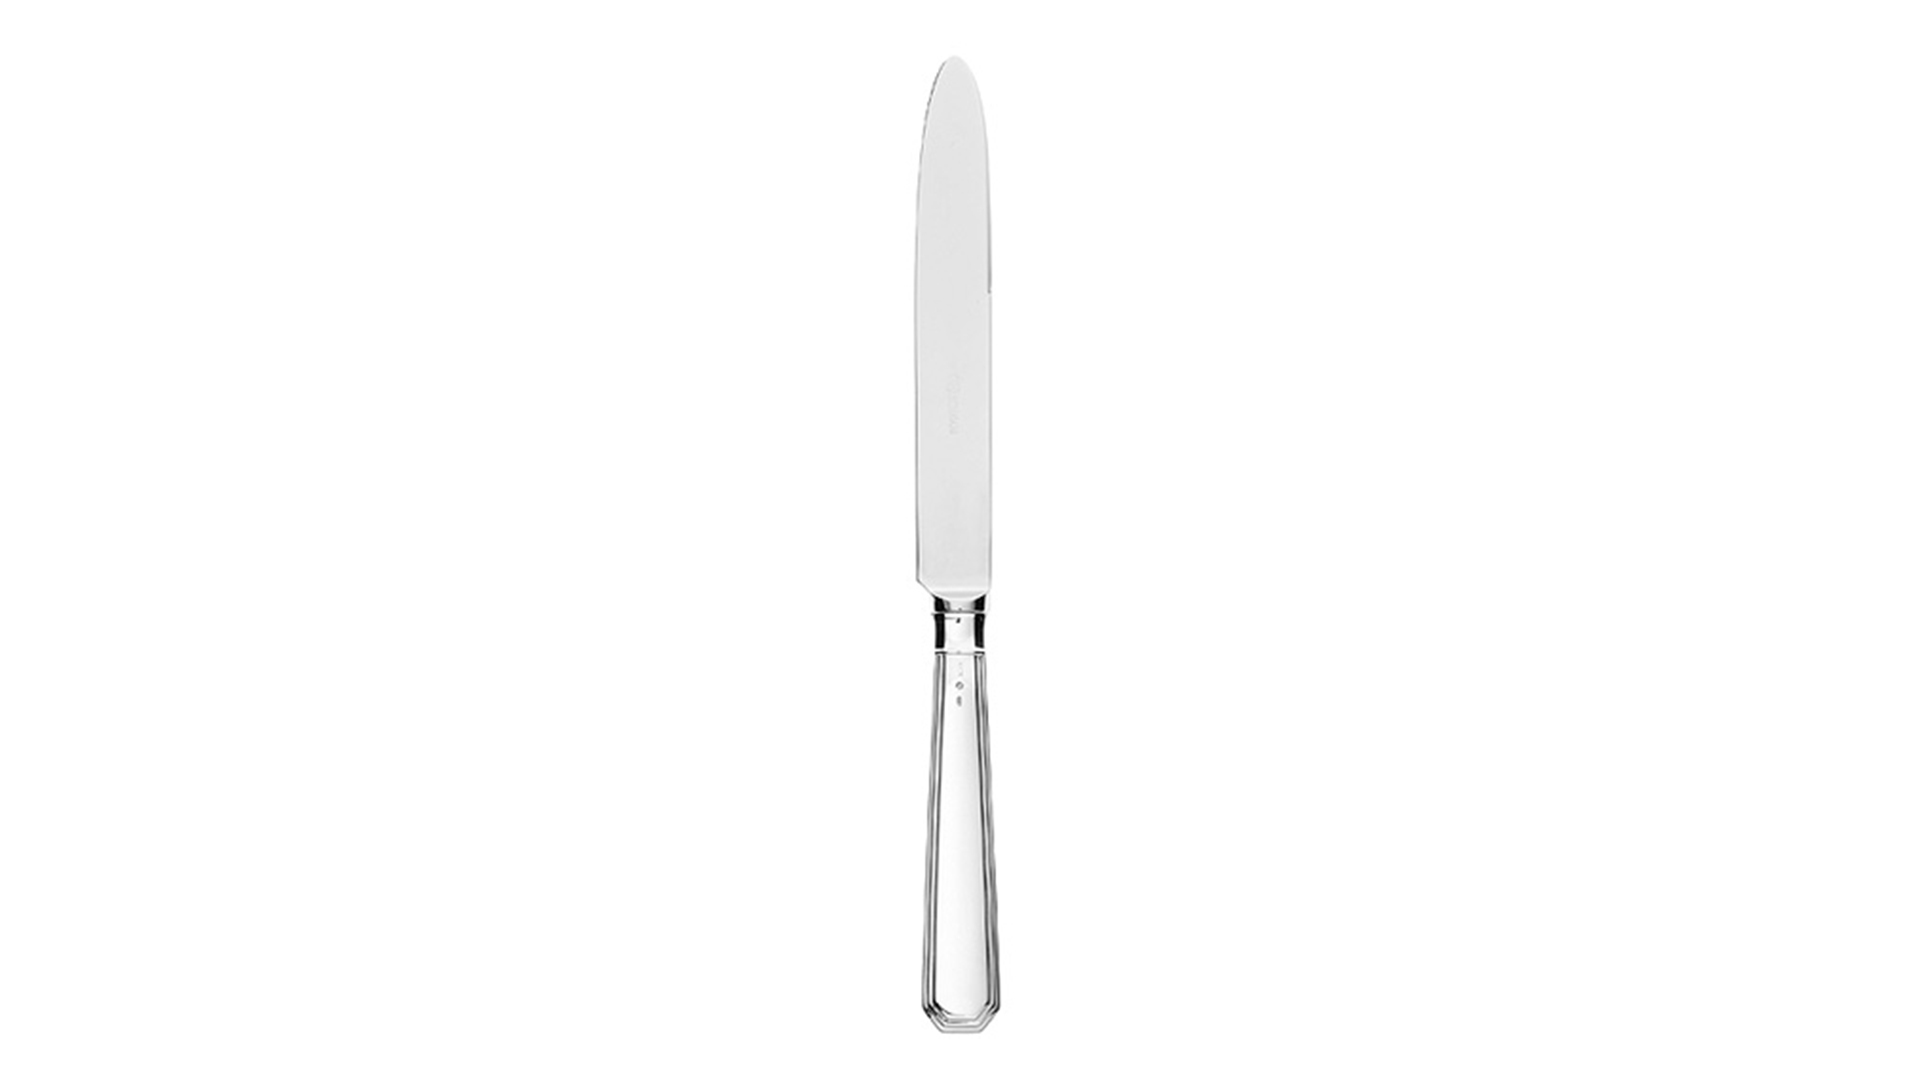 Нож столовый 25 см Schiavon Оттагонале, серебро 925пр